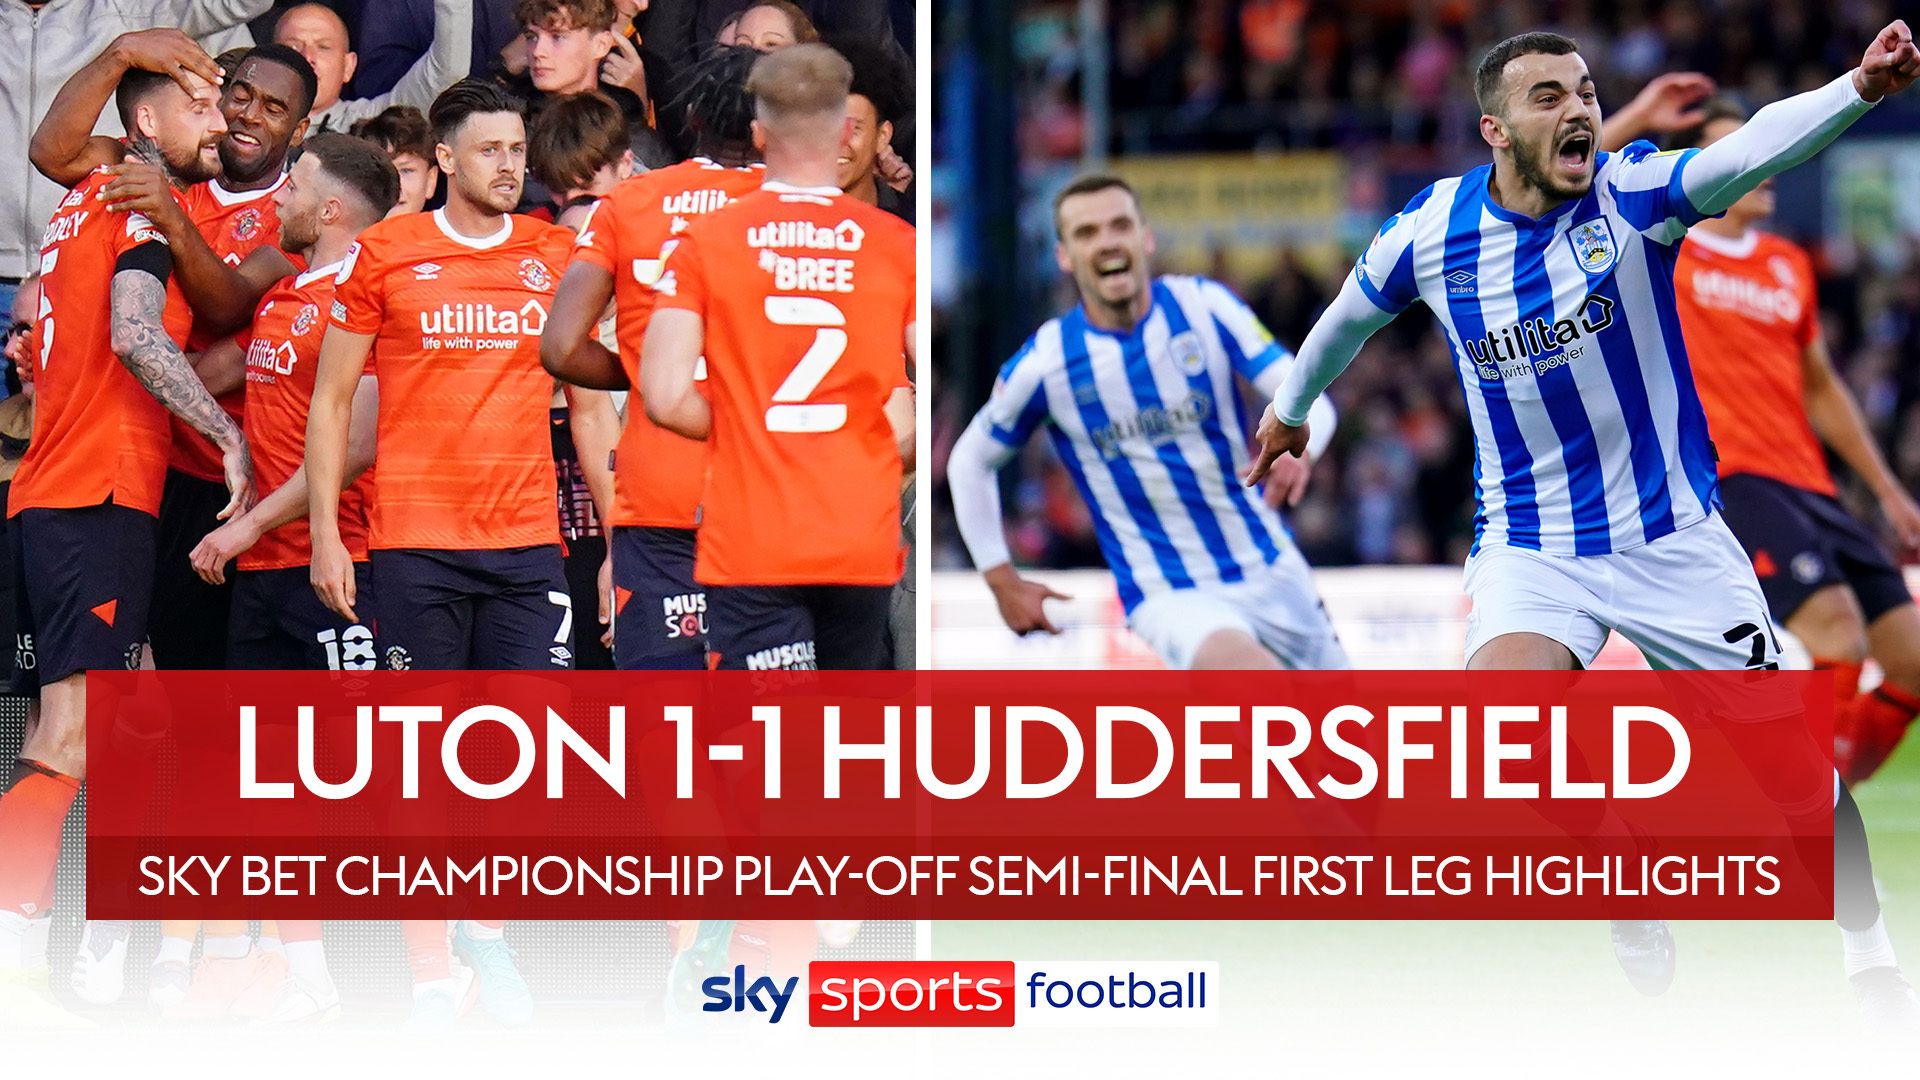 Luton 1-1 Huddersfield